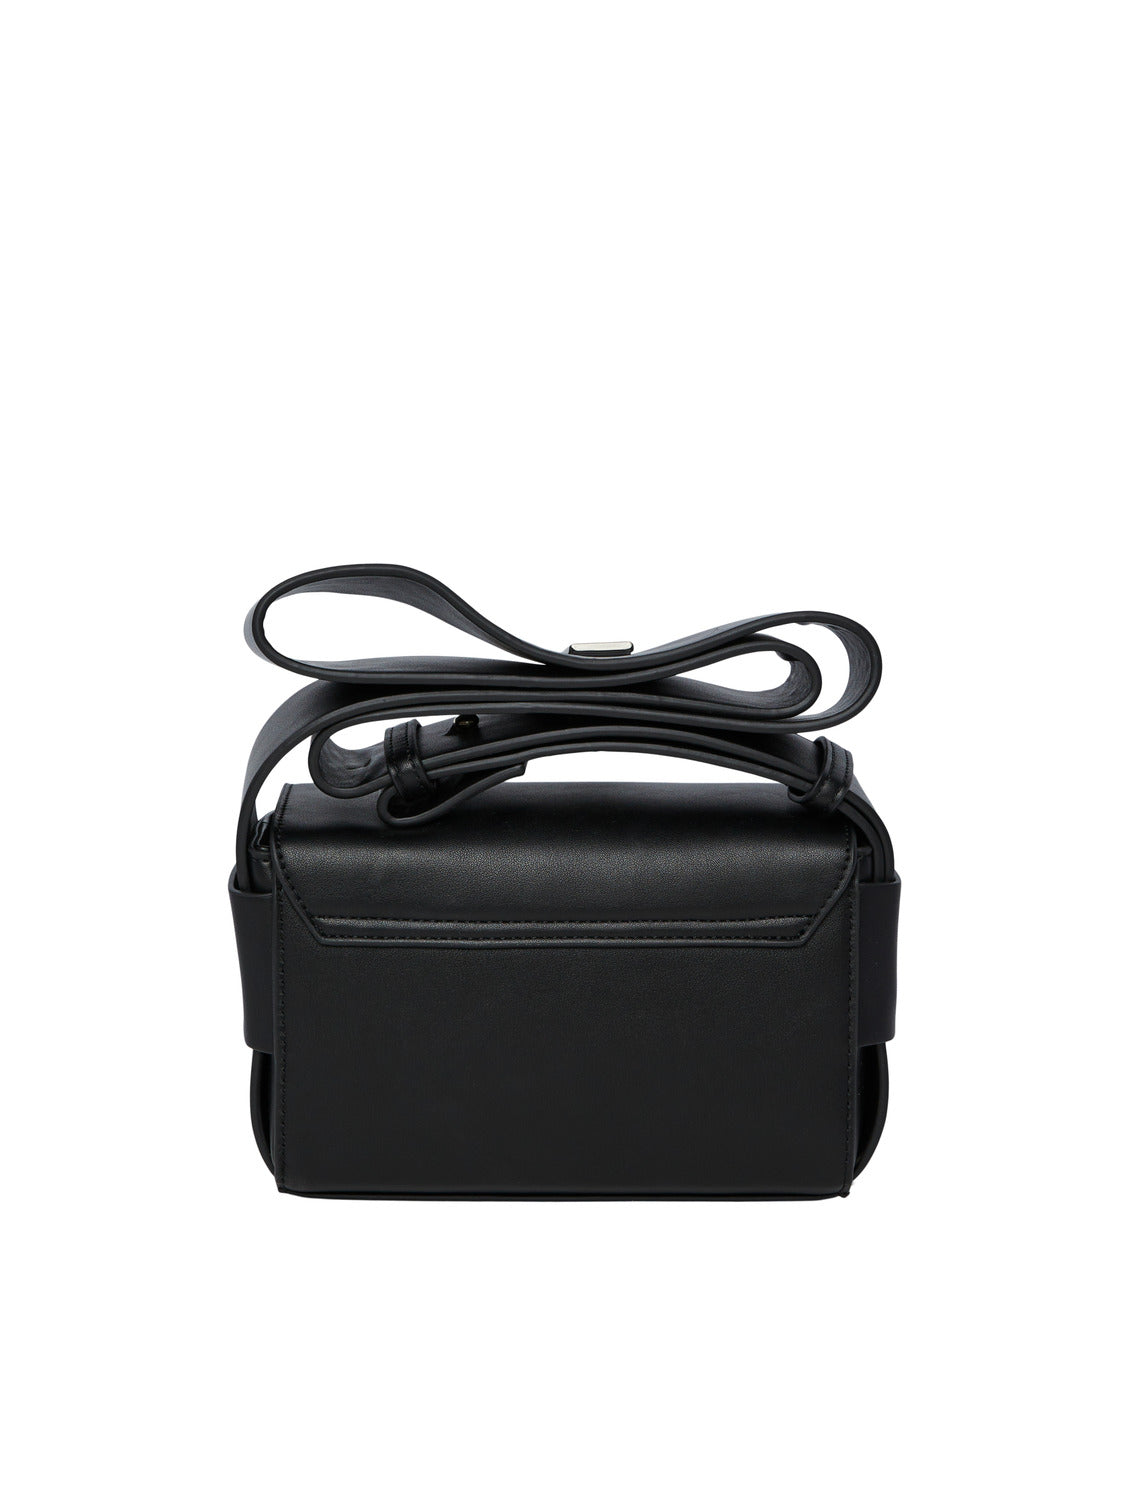 PCLIMA Handbag - Black